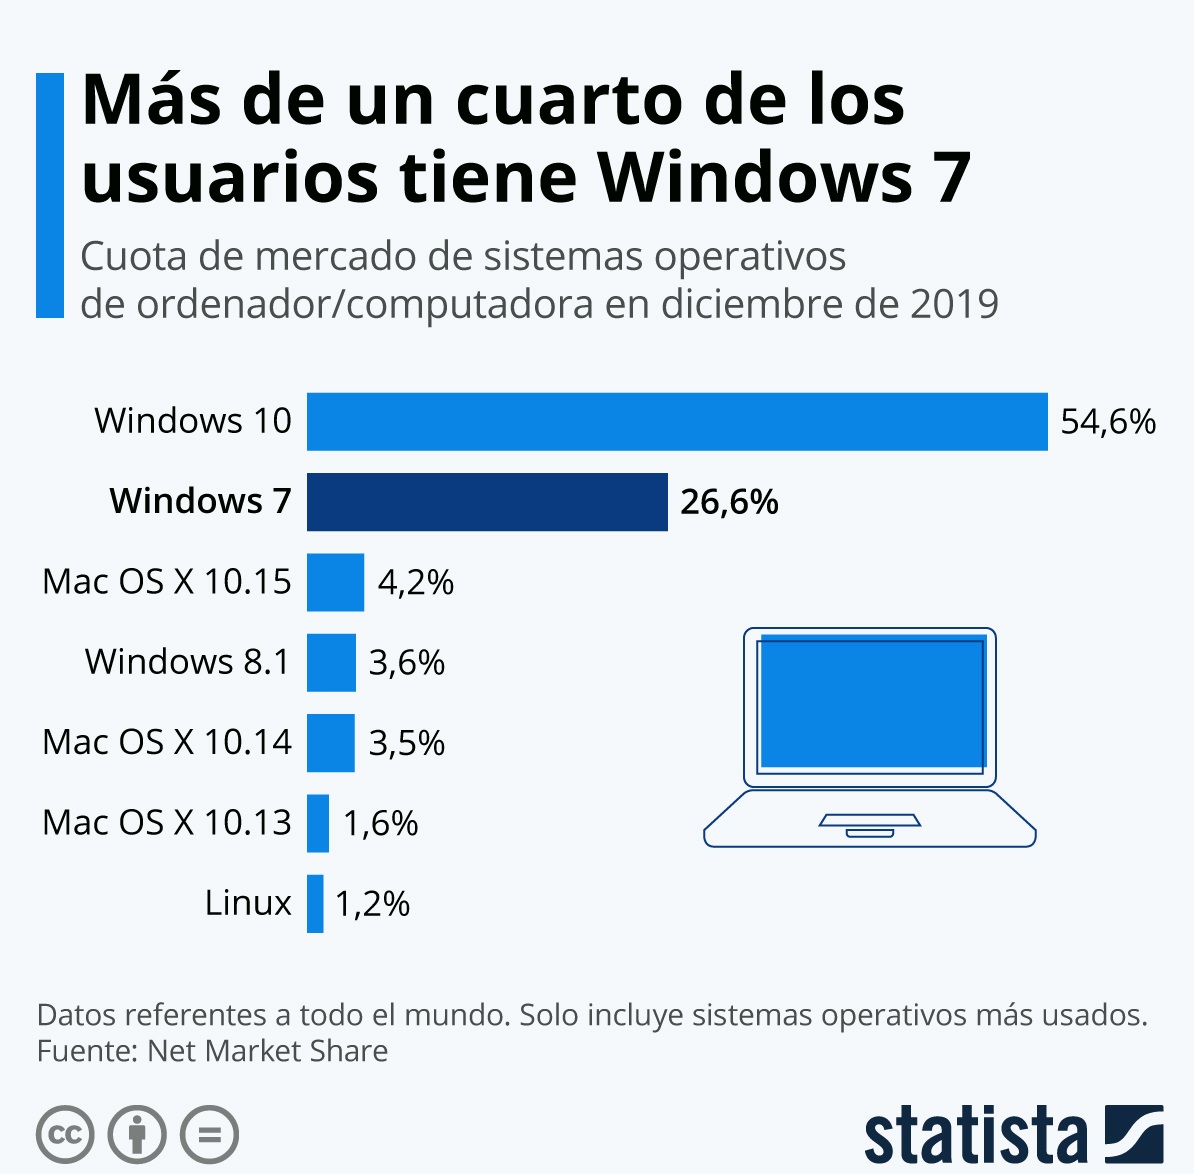 windows 7, statista, programapublicidad